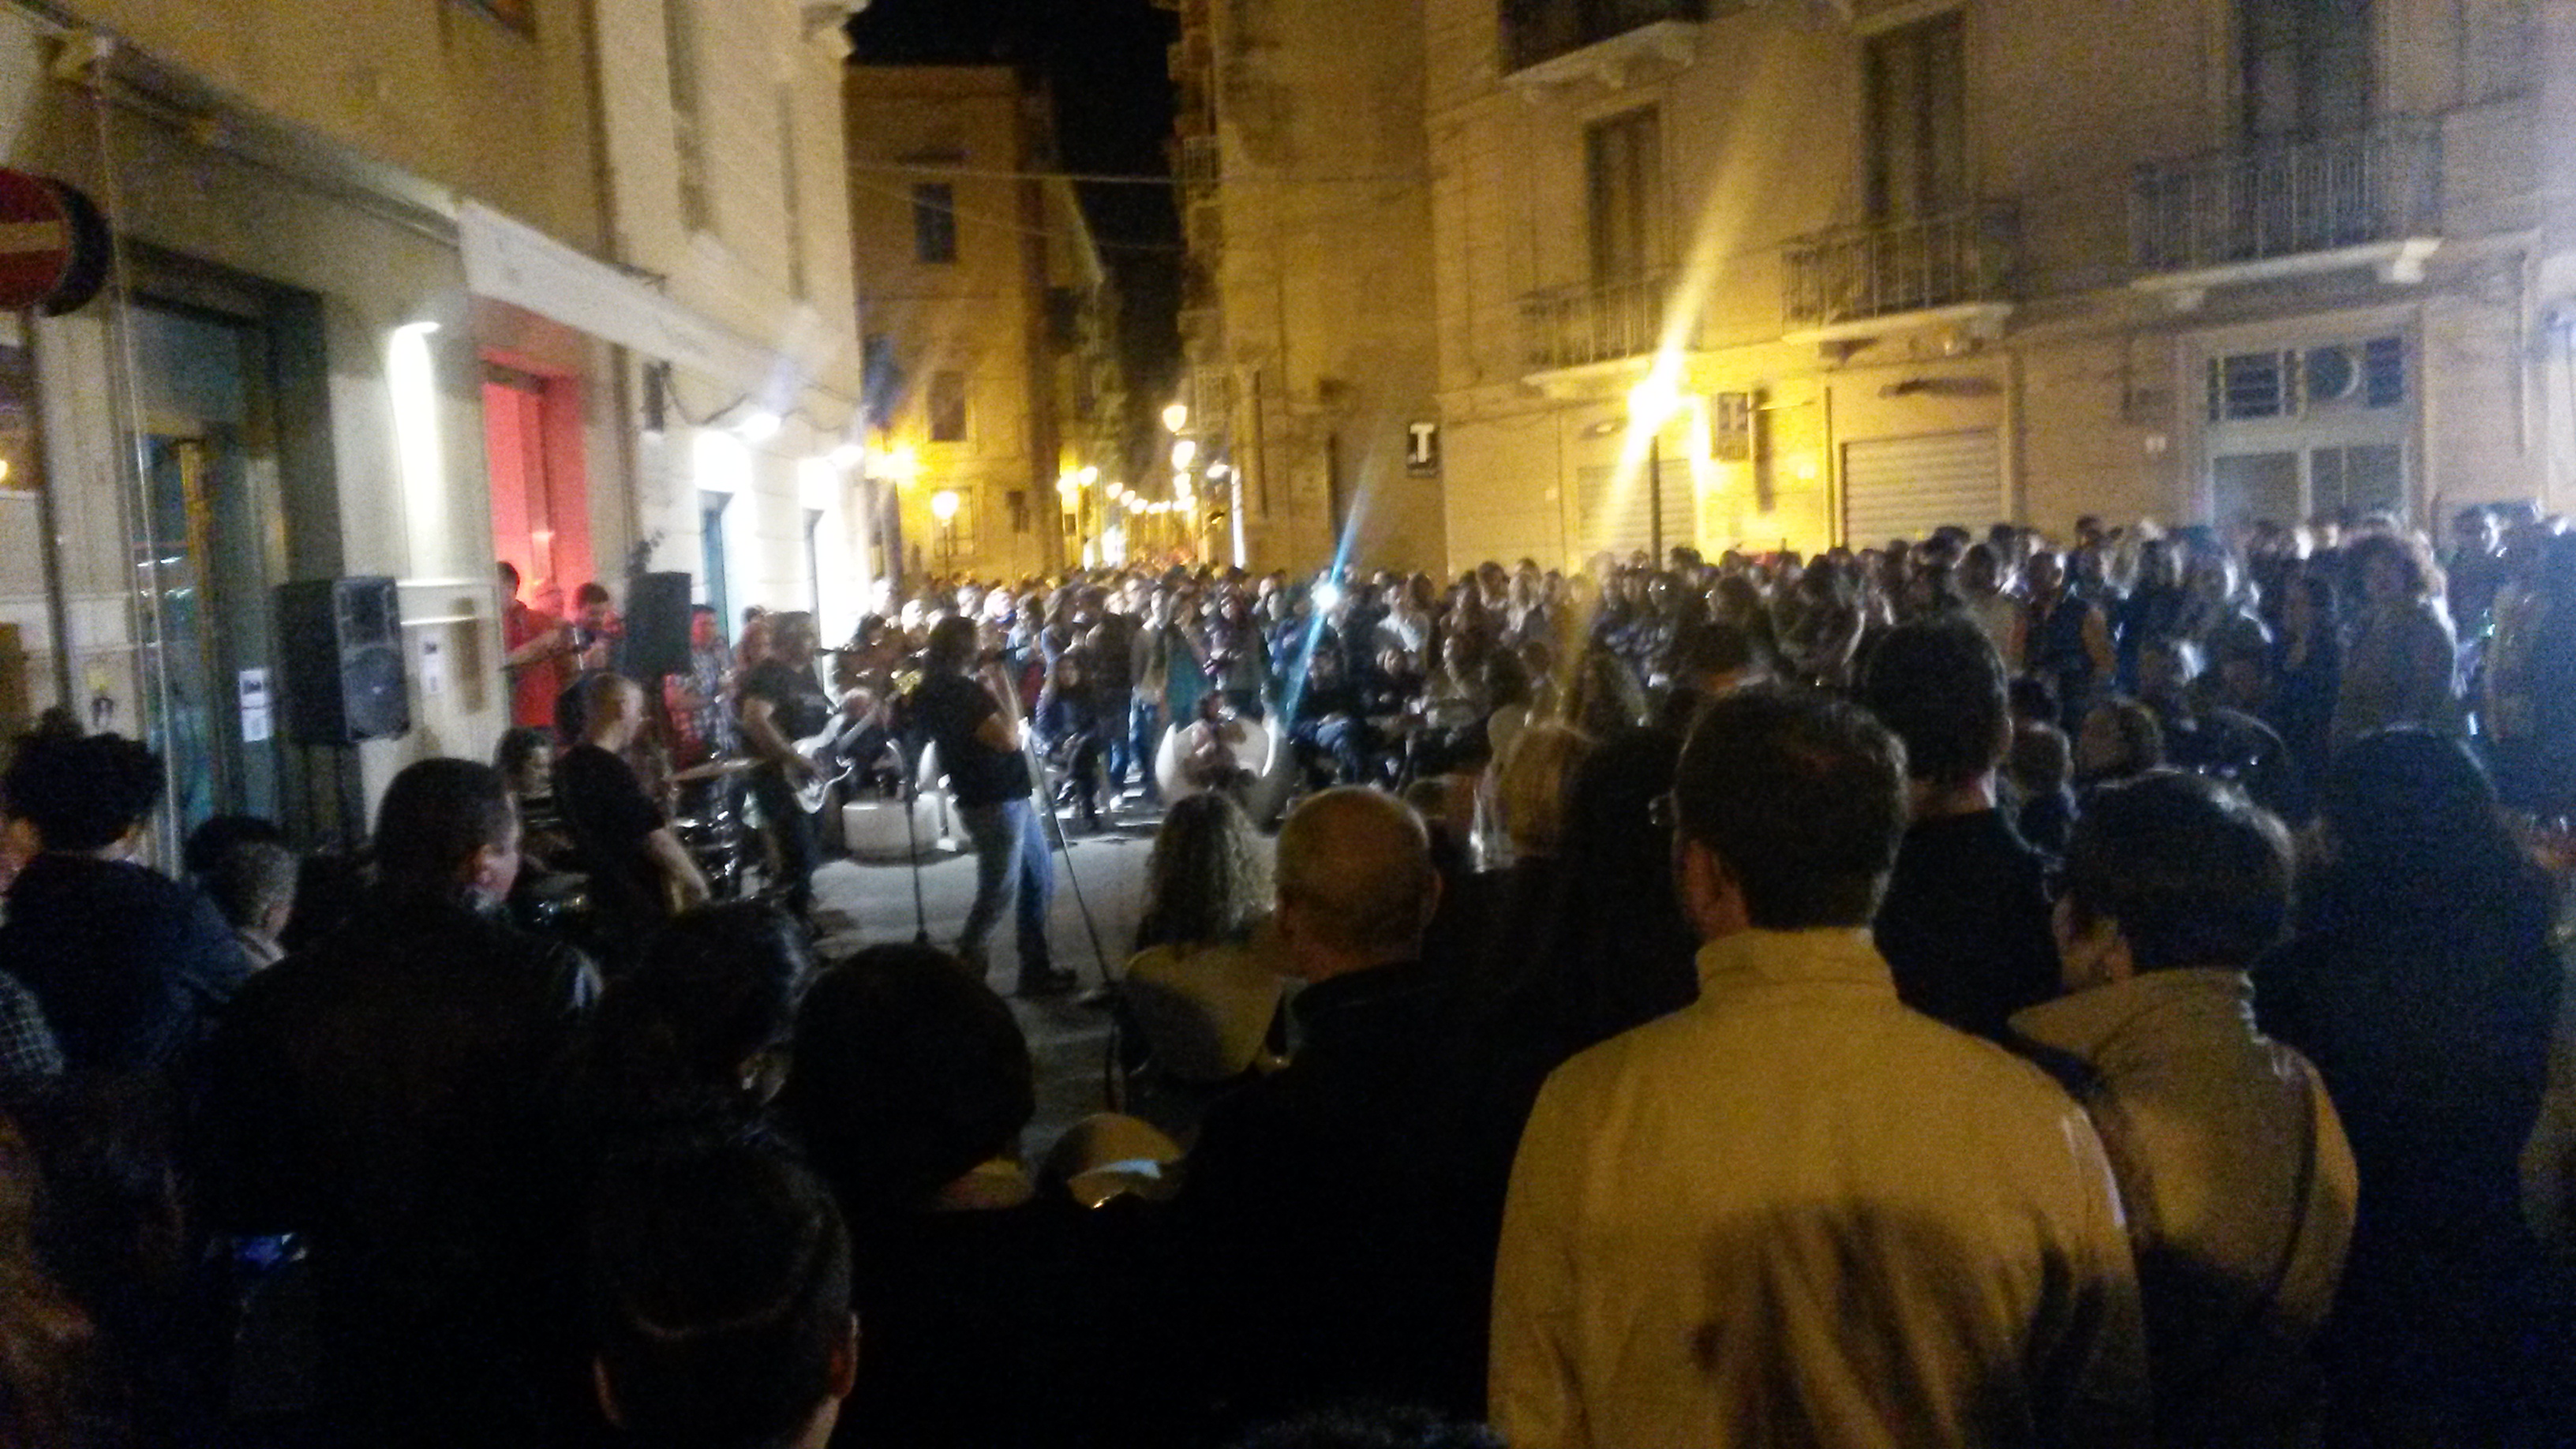 Musica “fuori legge” in centro a Trapani: denunciate 7 persone